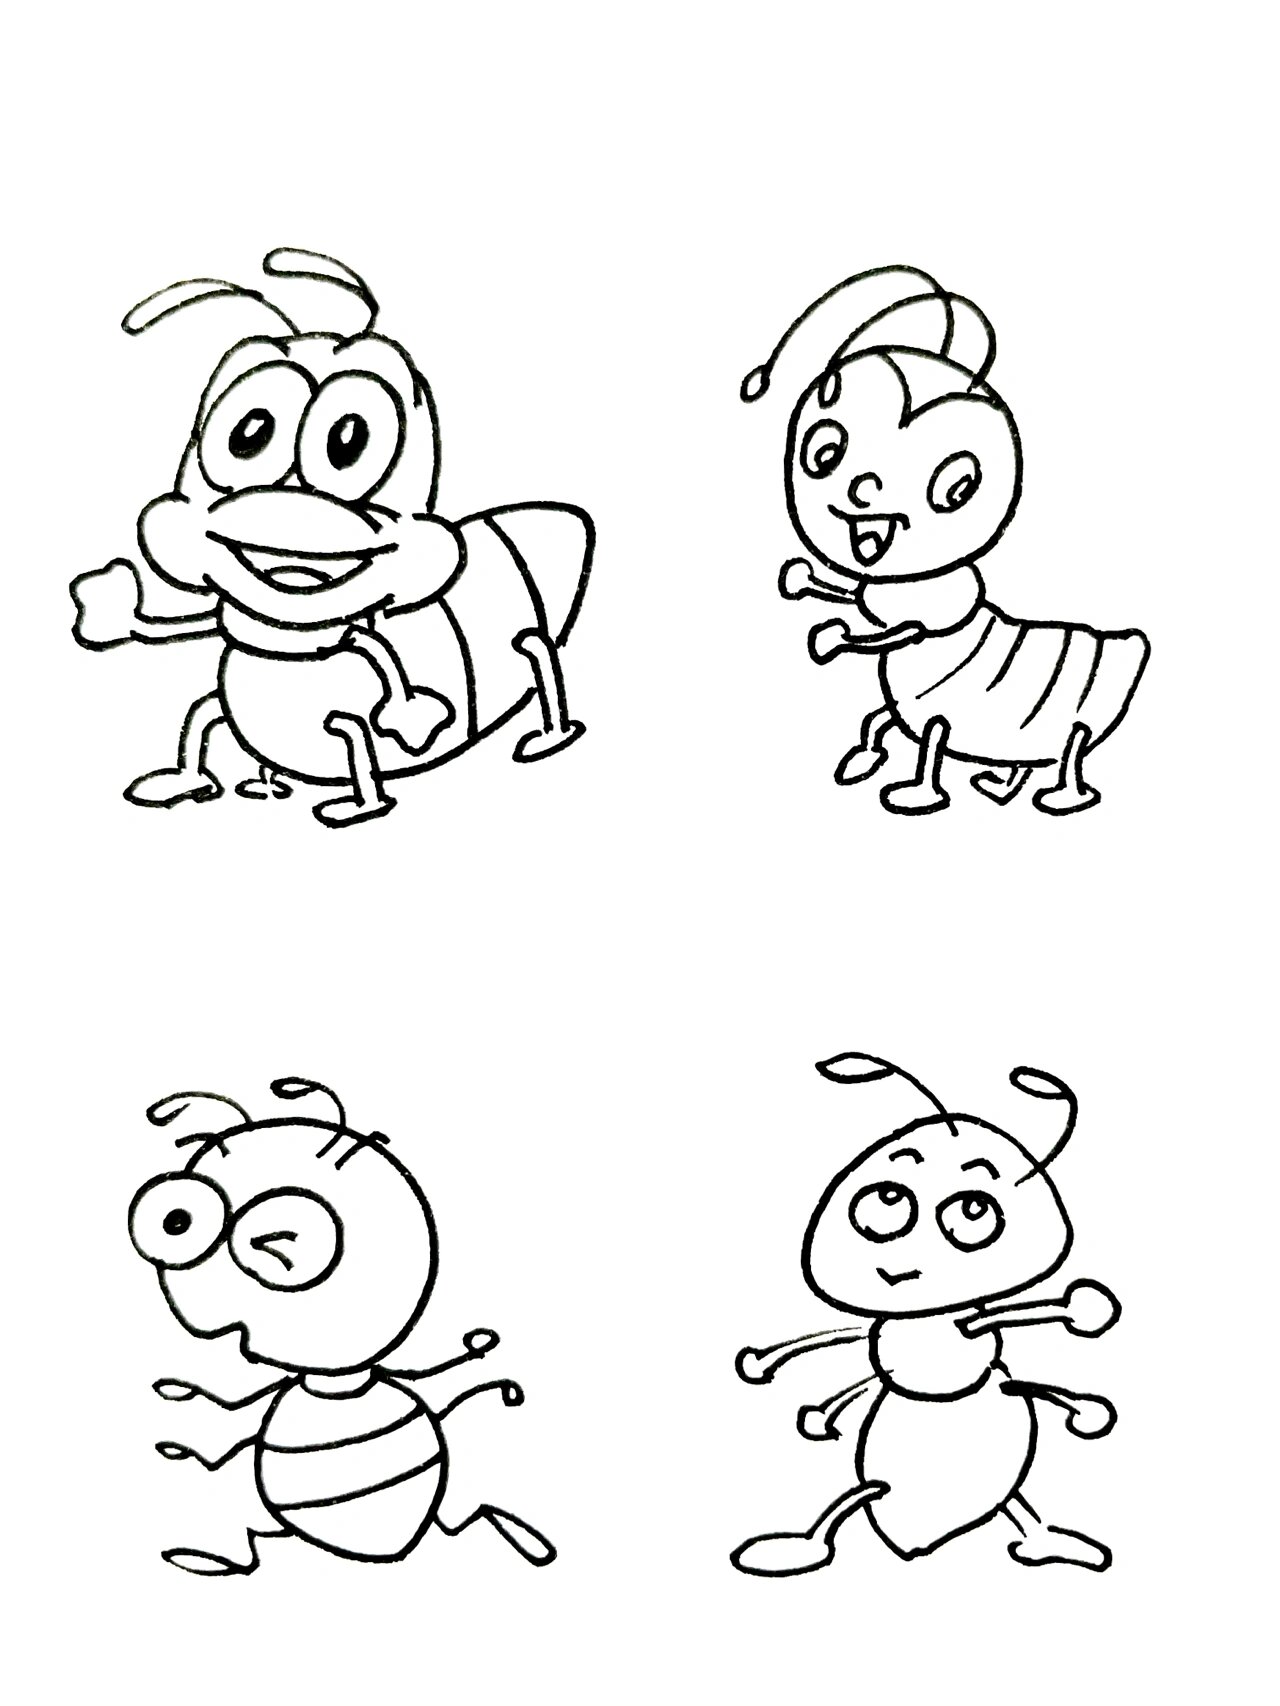 【简笔画】蚂蚁92 分享一组动物简笔画 还喜欢什么,留言给我哦 每天